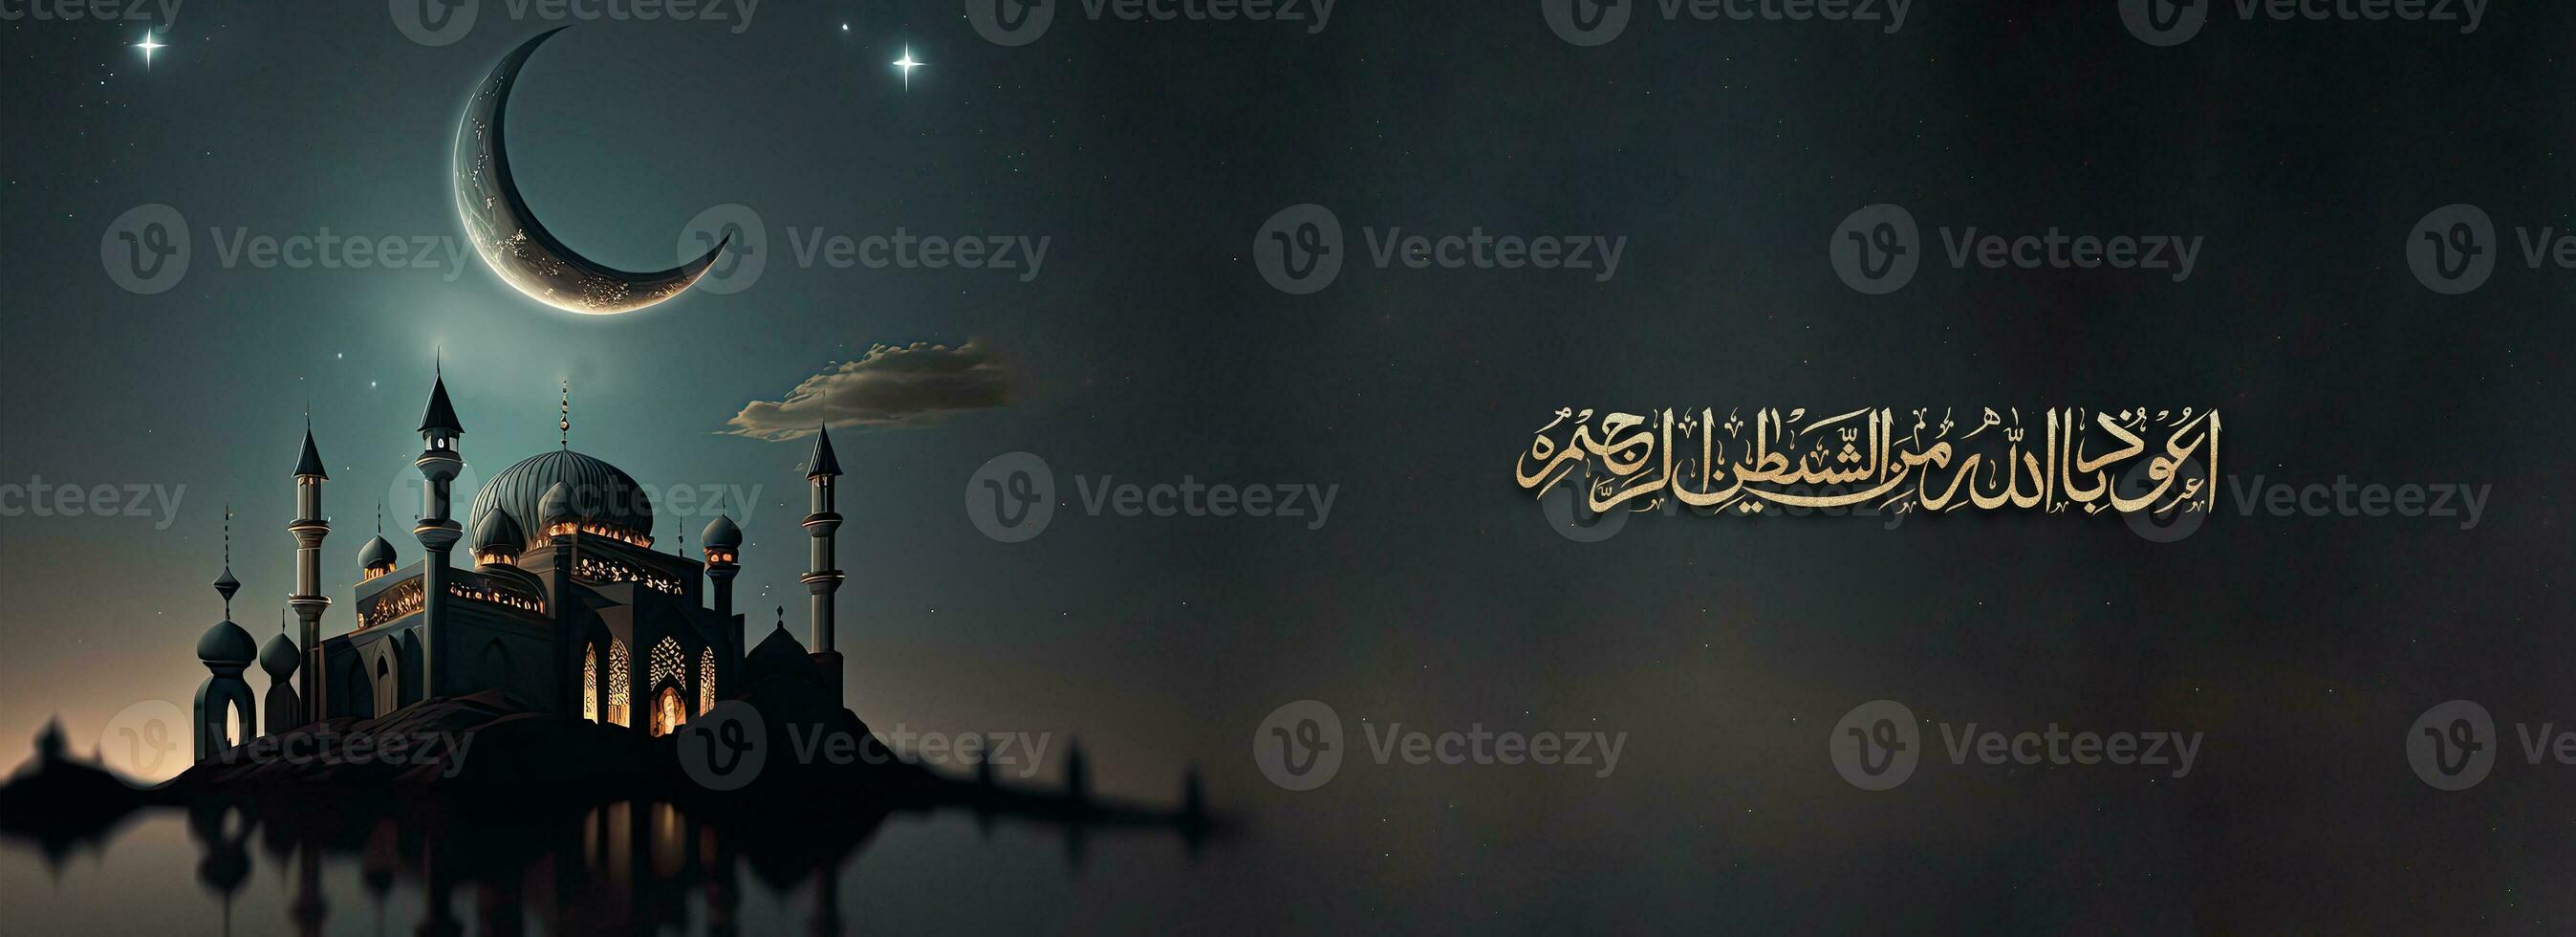 golden glitzernd Arabisch islamisch Kalligraphie von Wunsch Angst von Allah bringt Intelligenz, Ehrlichkeit und Liebe und 3d machen von Moschee, Halbmond Mond Nacht Hintergrund. foto